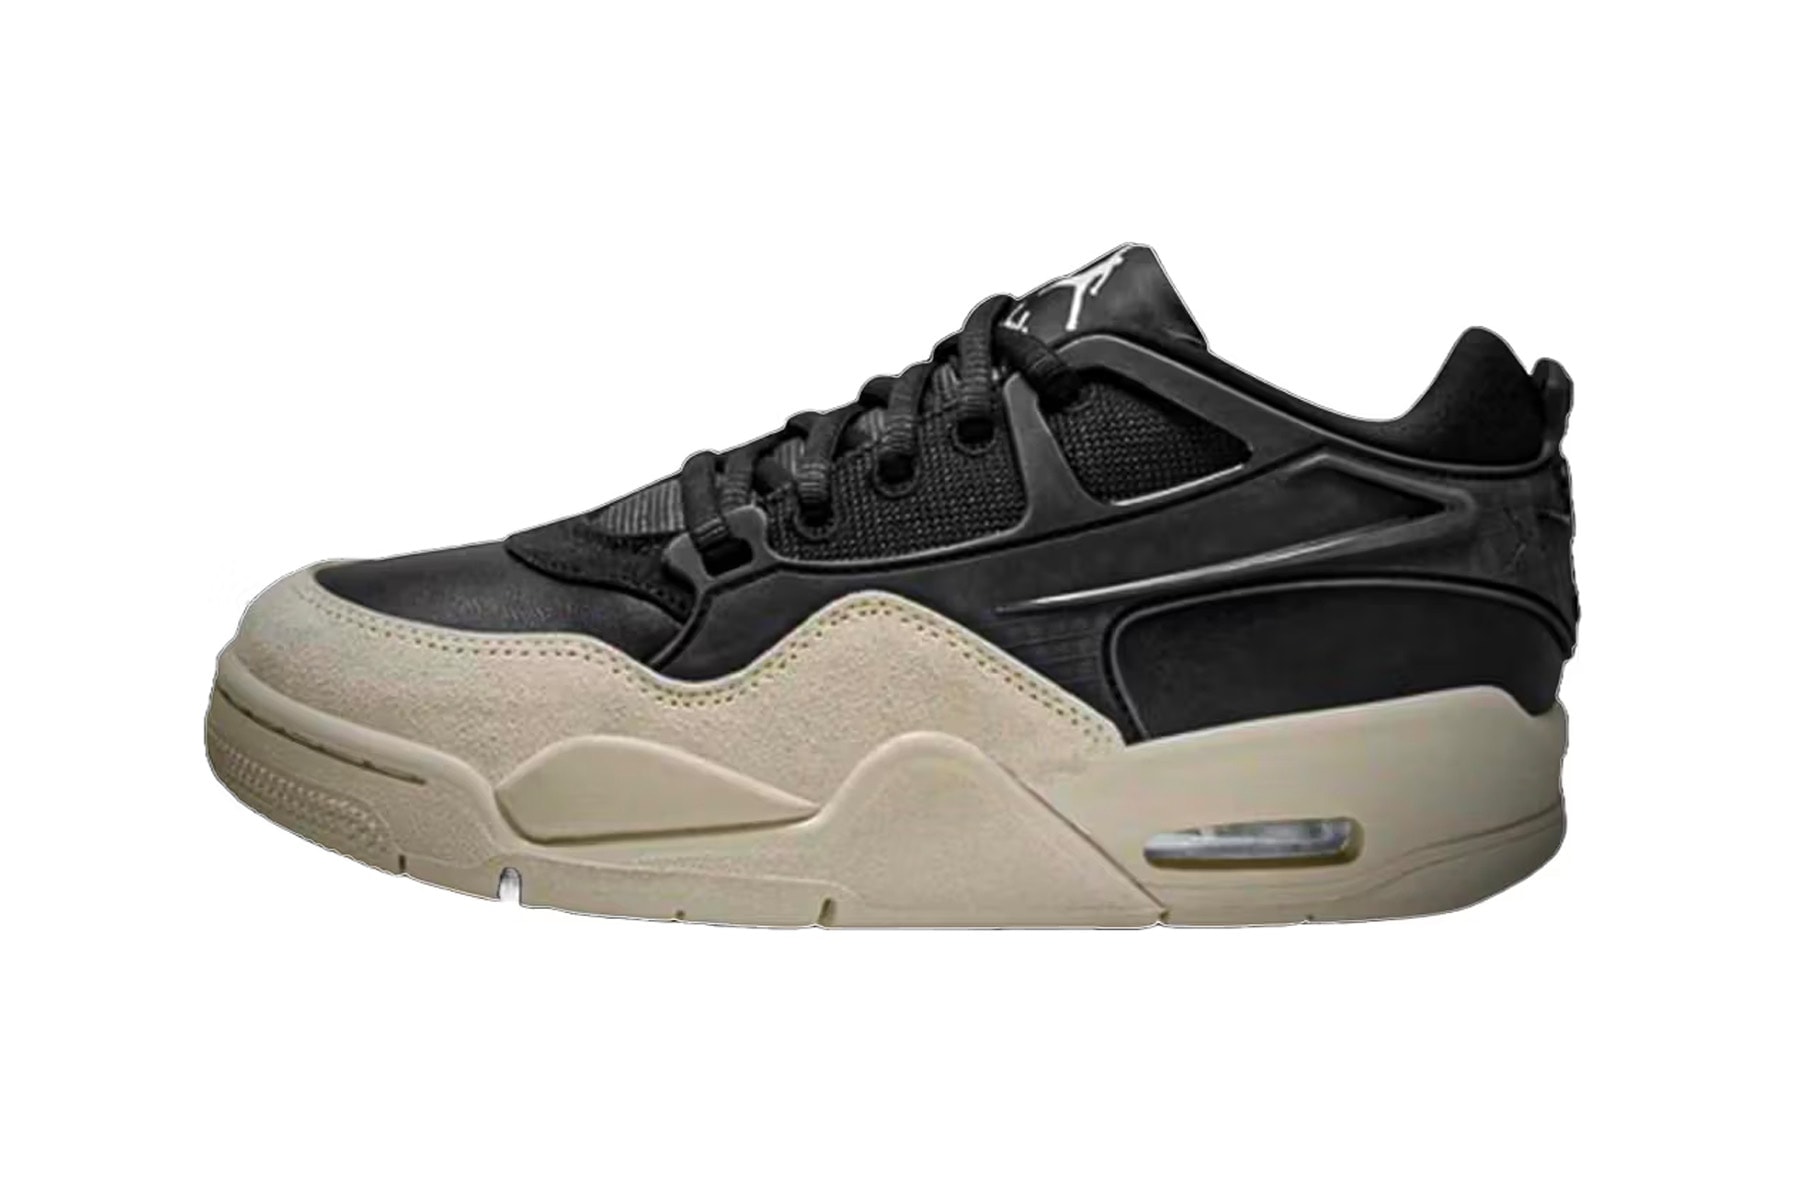 率先预览 Jordan Brand 全新鞋型 Air Jordan 4 RM